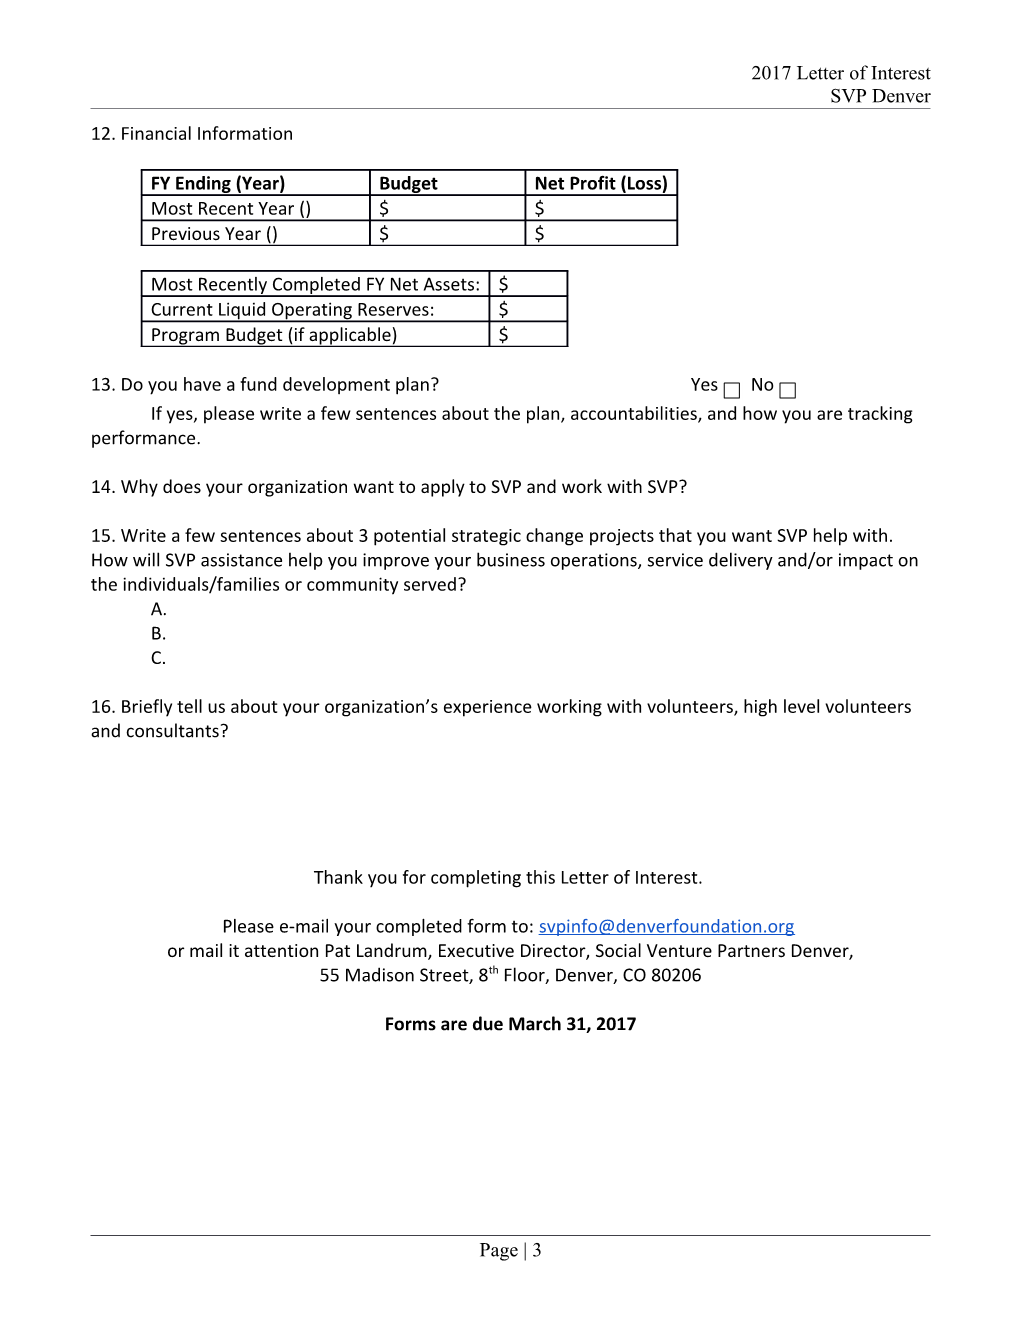 SVP Denver - Grant Application Entry Form